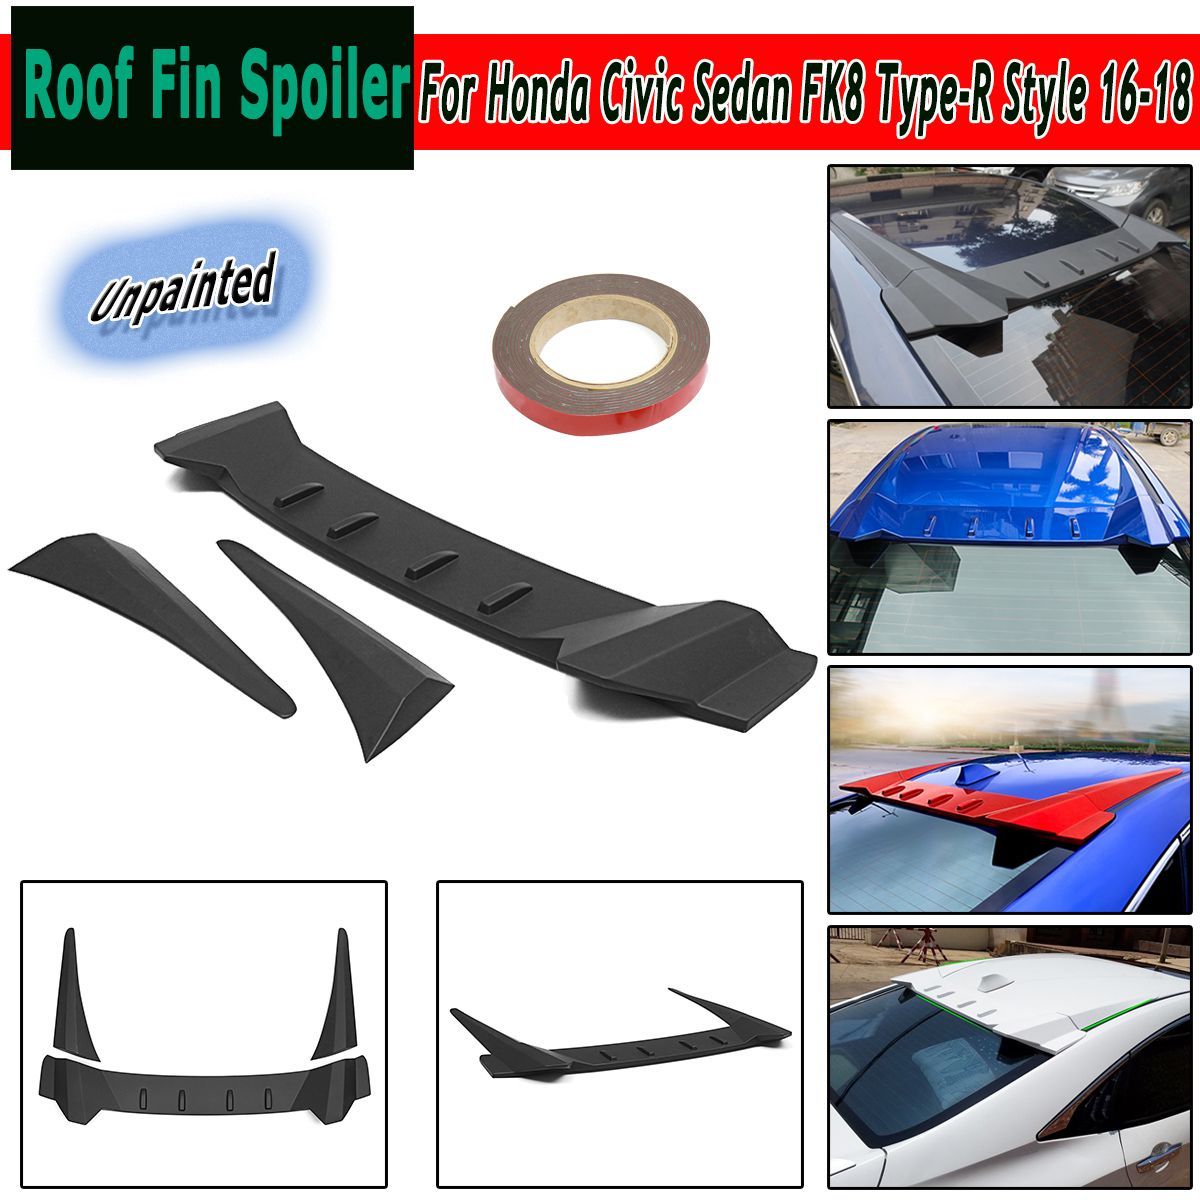 Unpainted-Black-Roof-Fin-Spoiler-For-Honda-Civic-Sedan-FK8-Type-R-Style-2016-2018-1677146